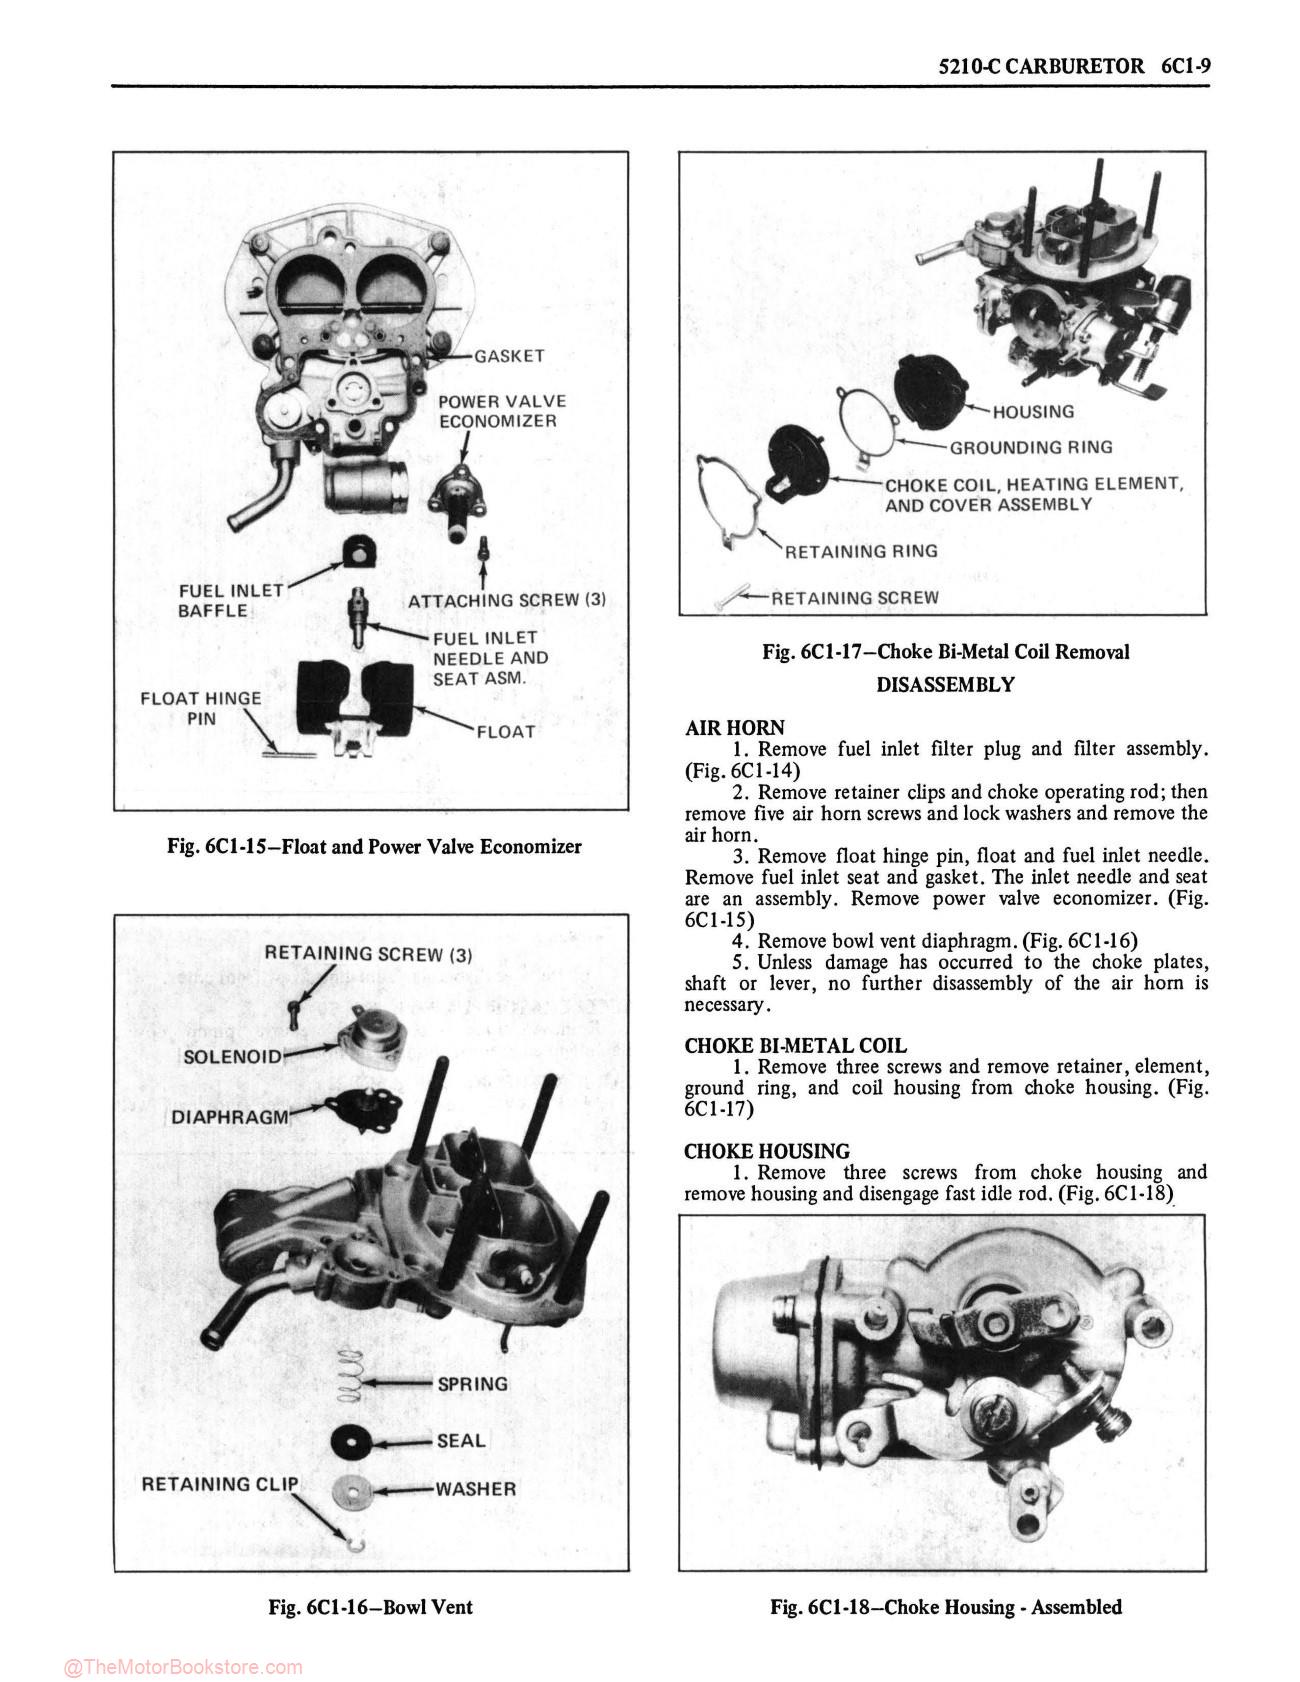 1978 Oldsmobile Service Repair Manual - Sample Page 1